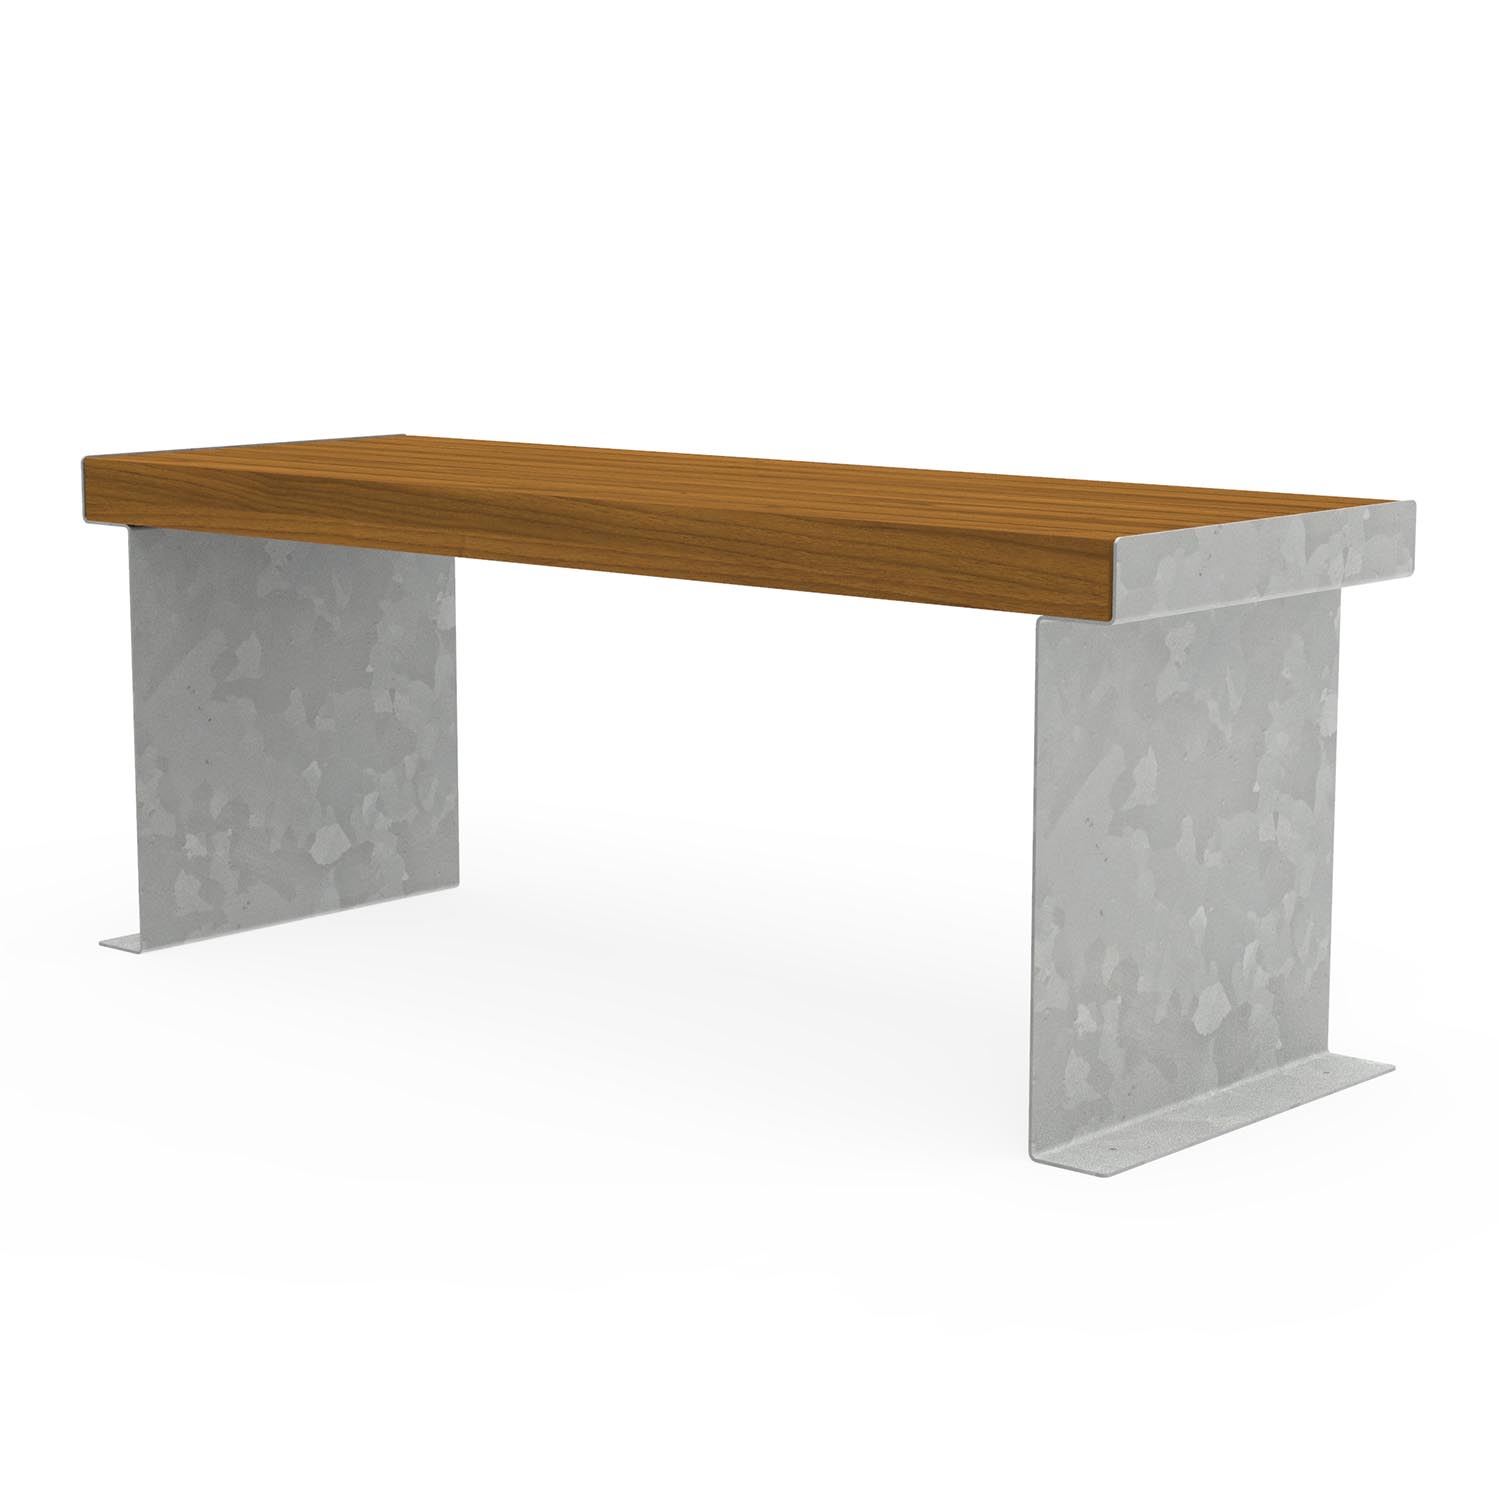 CUBE Tisch mit Gestell aus Stahl und Tischfläche aus Holz